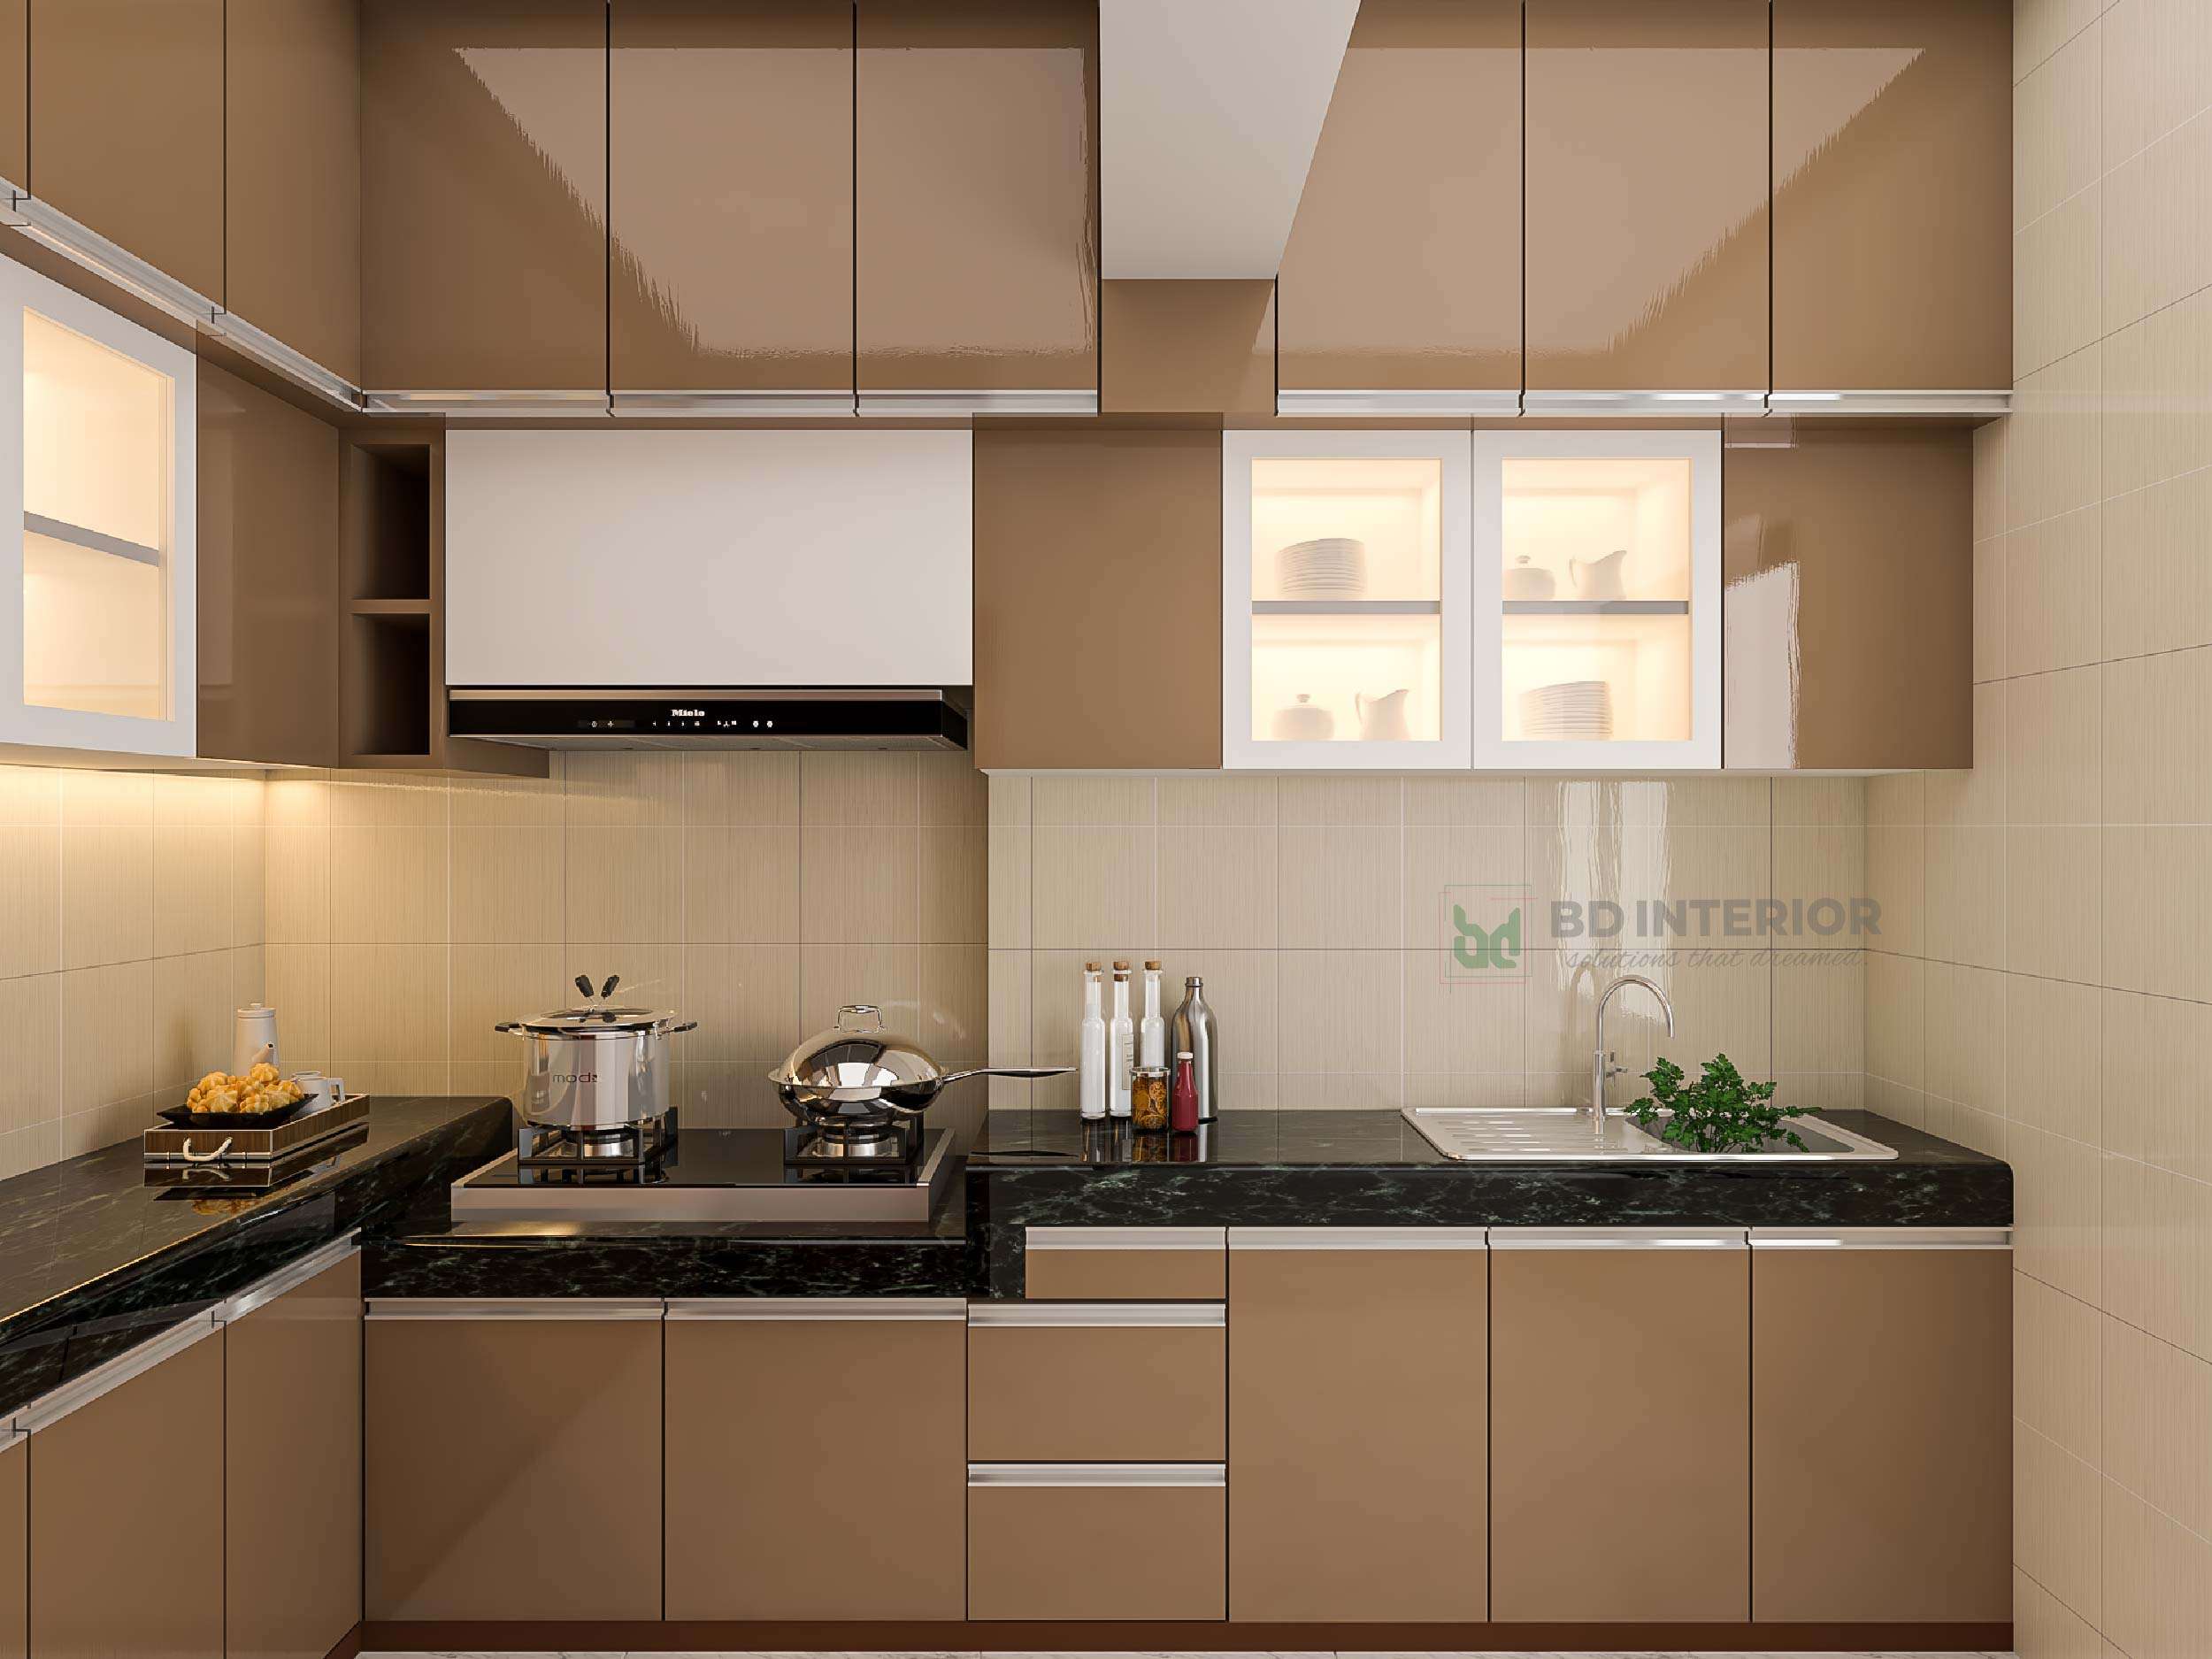 exceptional kitchen interior design